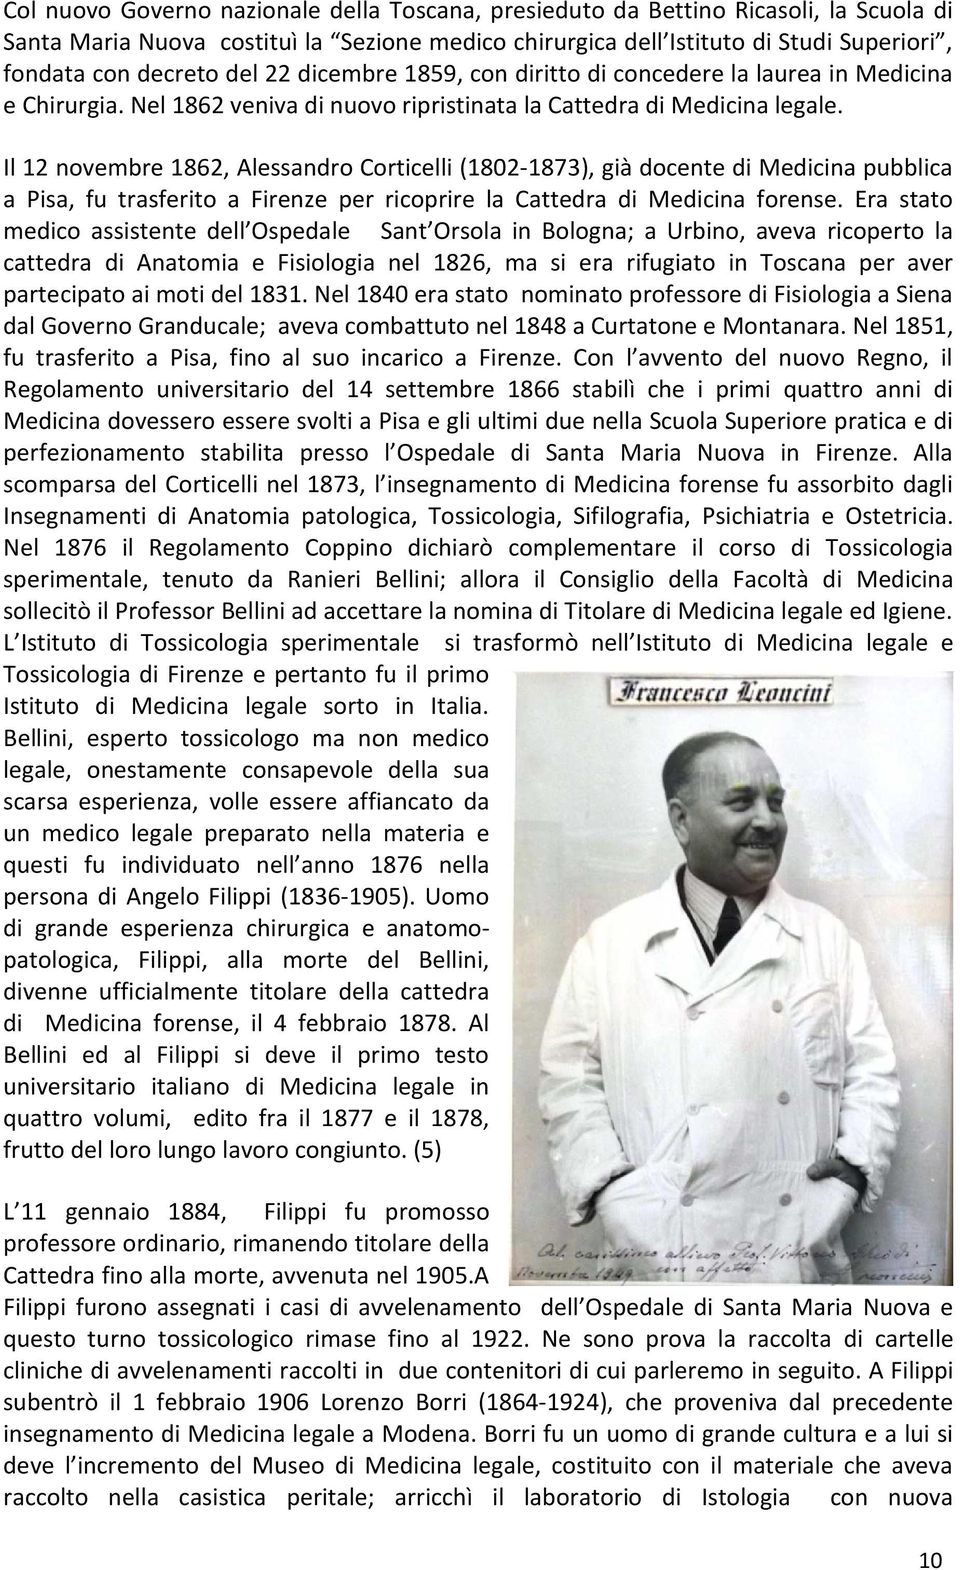 Il 12 novembre 1862, Alessandro Corticelli (1802-1873), già docente di Medicina pubblica a Pisa, fu trasferito a Firenze per ricoprire la Cattedra di Medicina forense.